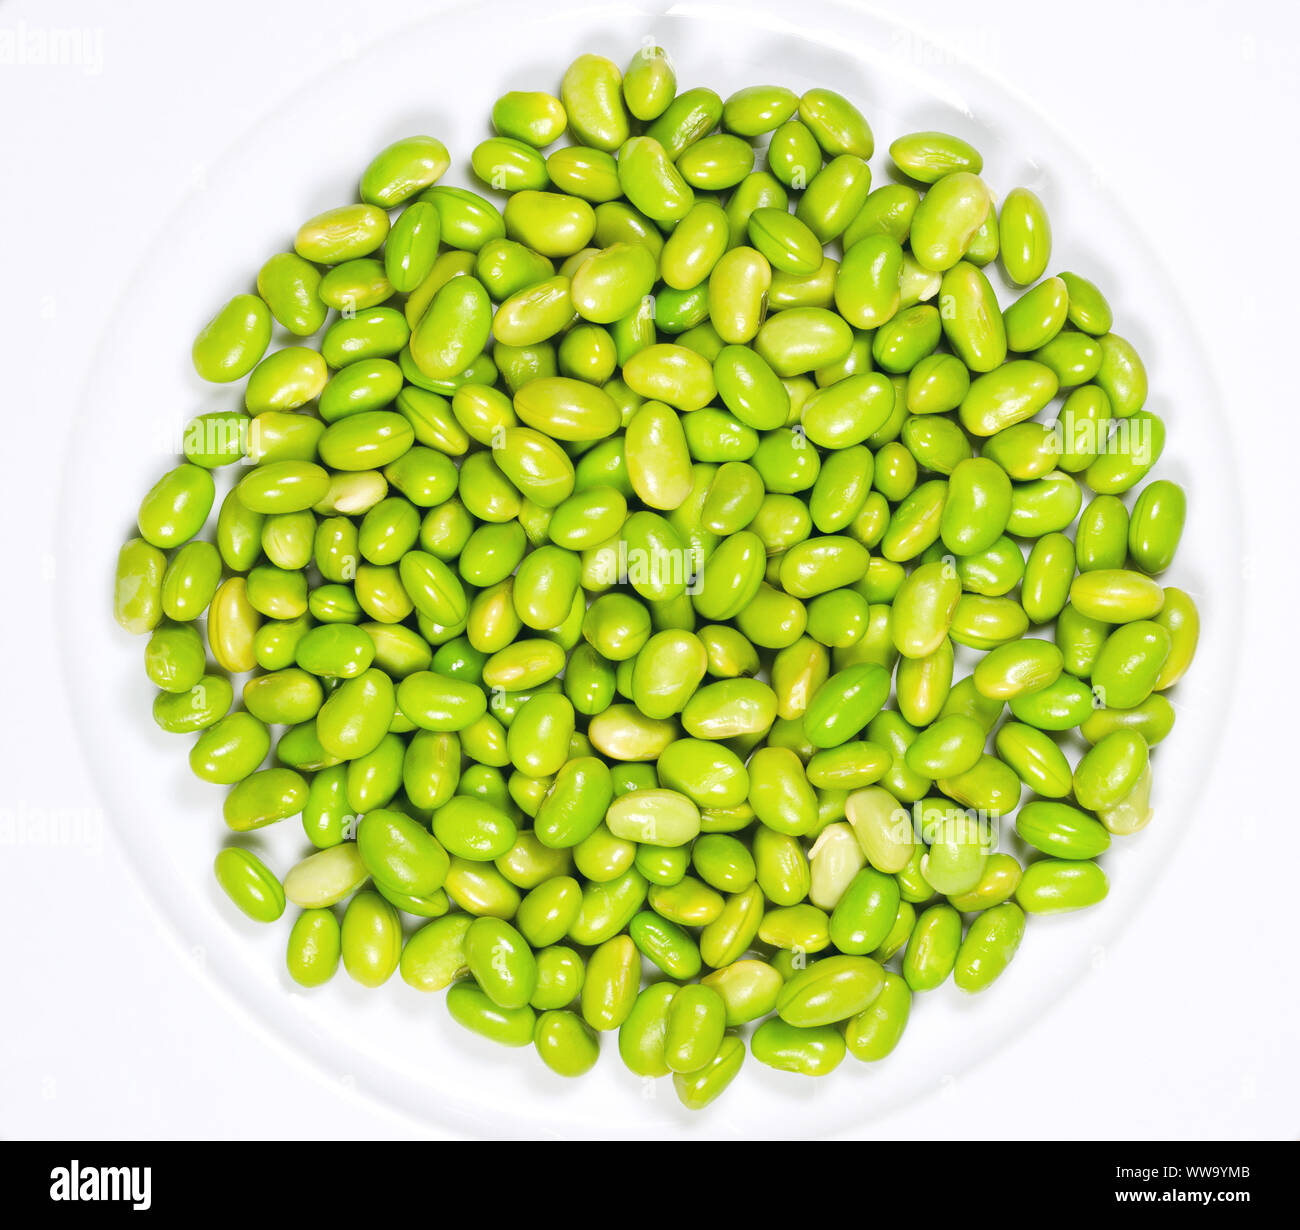 Edamame. Le soja vert sur une assiette blanche. Mukimame non mûres, les graines de soja à l'extérieur de la gousse. Glycine max, une légumineuse, comestibles après cuisson et source de protéines. Banque D'Images